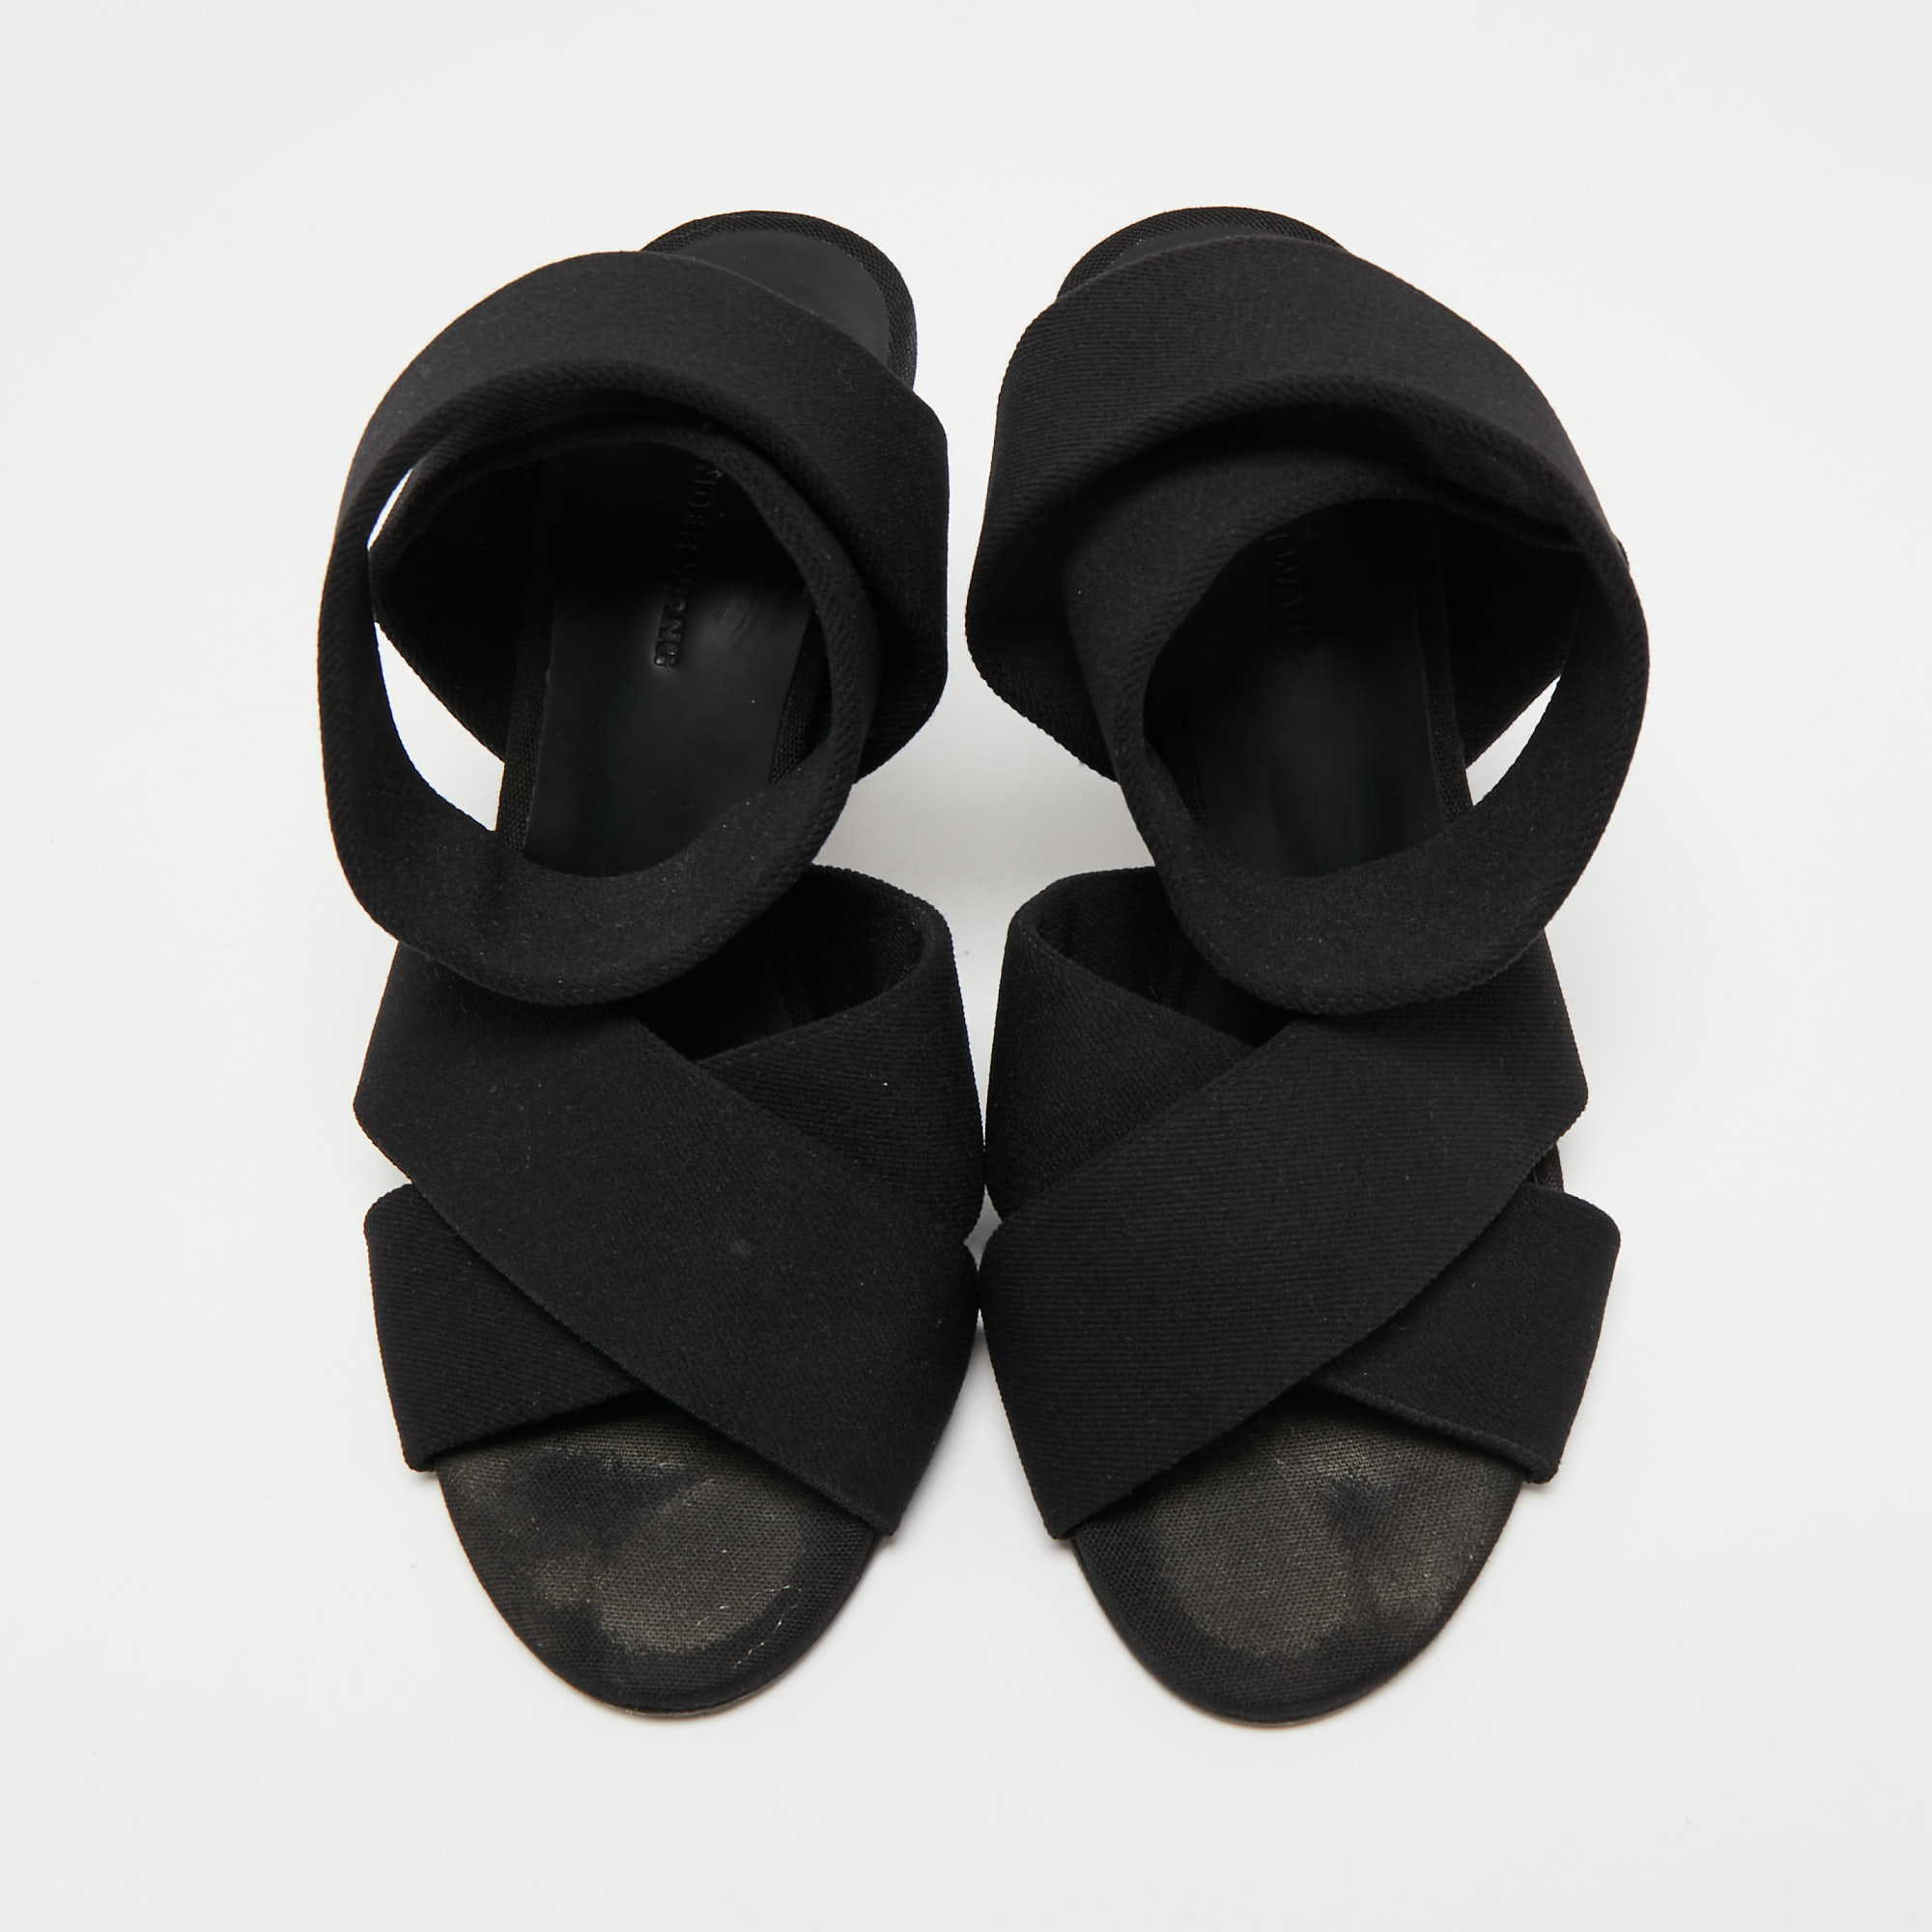 Alexander Wang Black Canvas Ankle Wrap Sandals Size 36